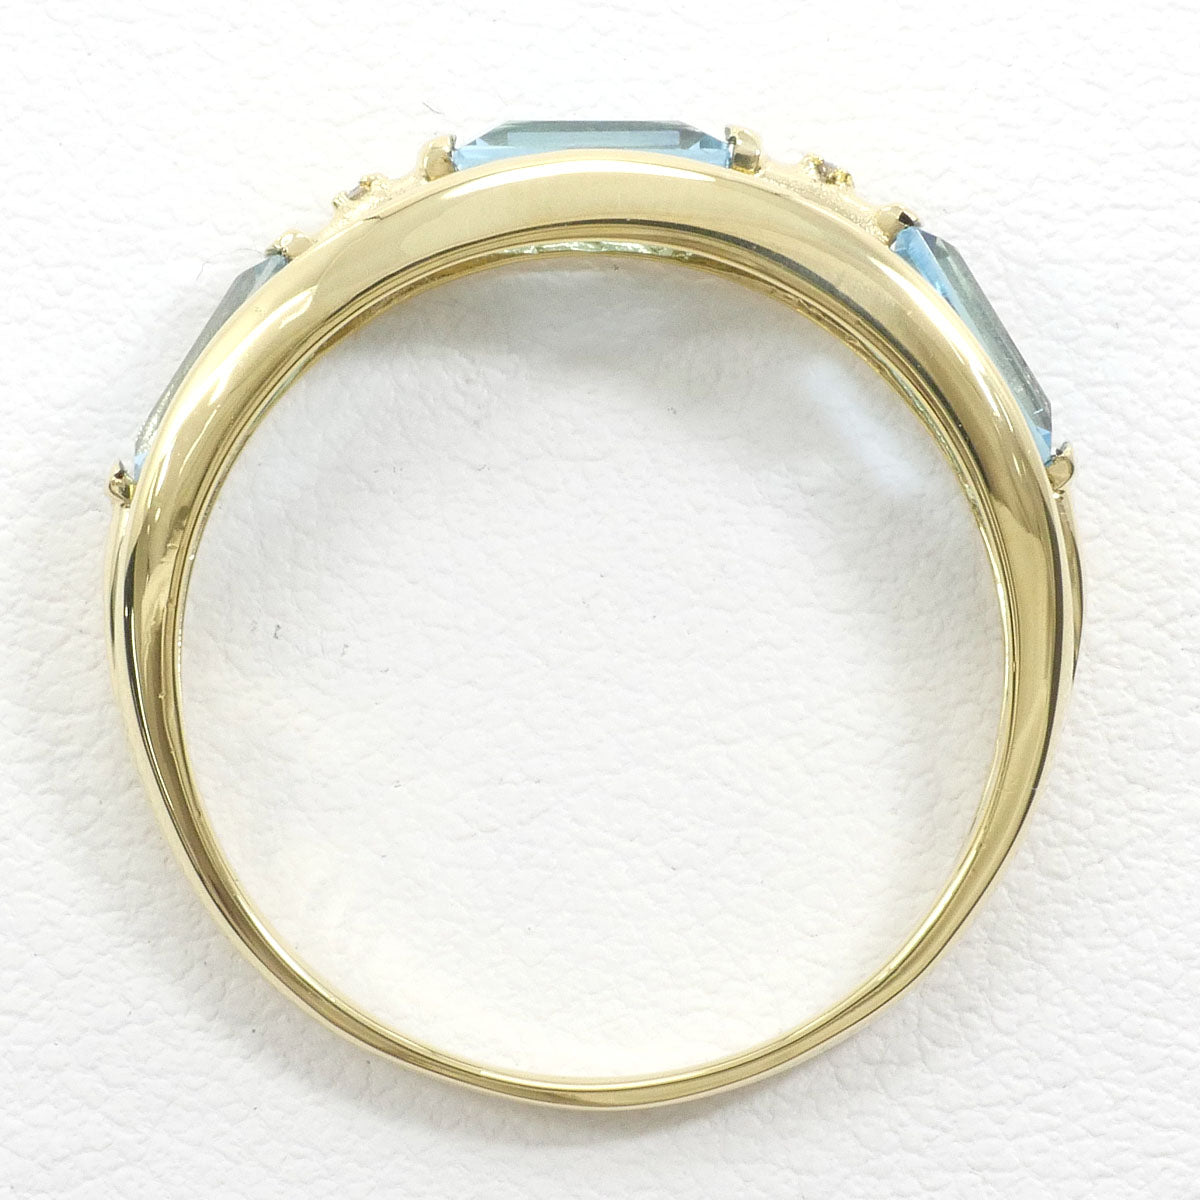 K18YG リング 指輪 16号 ブルートパーズ 1.20 ダイヤ 総重量約2.7